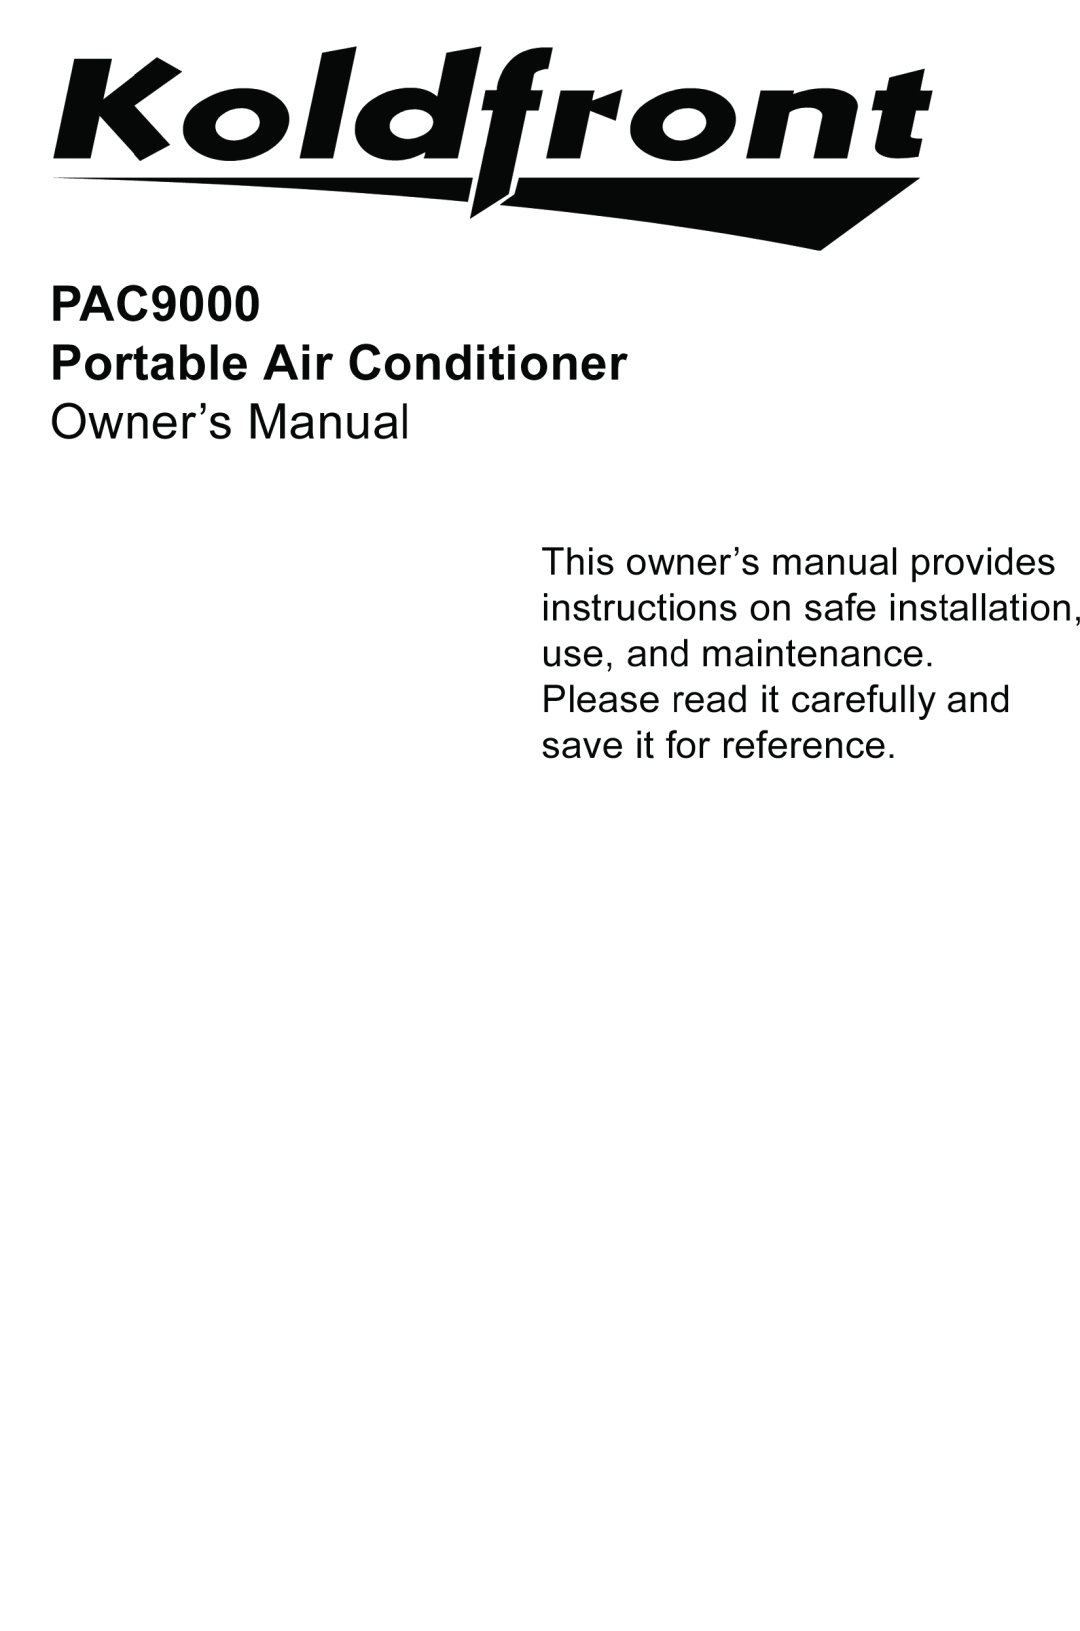 KoldFront PAC9000 manual 